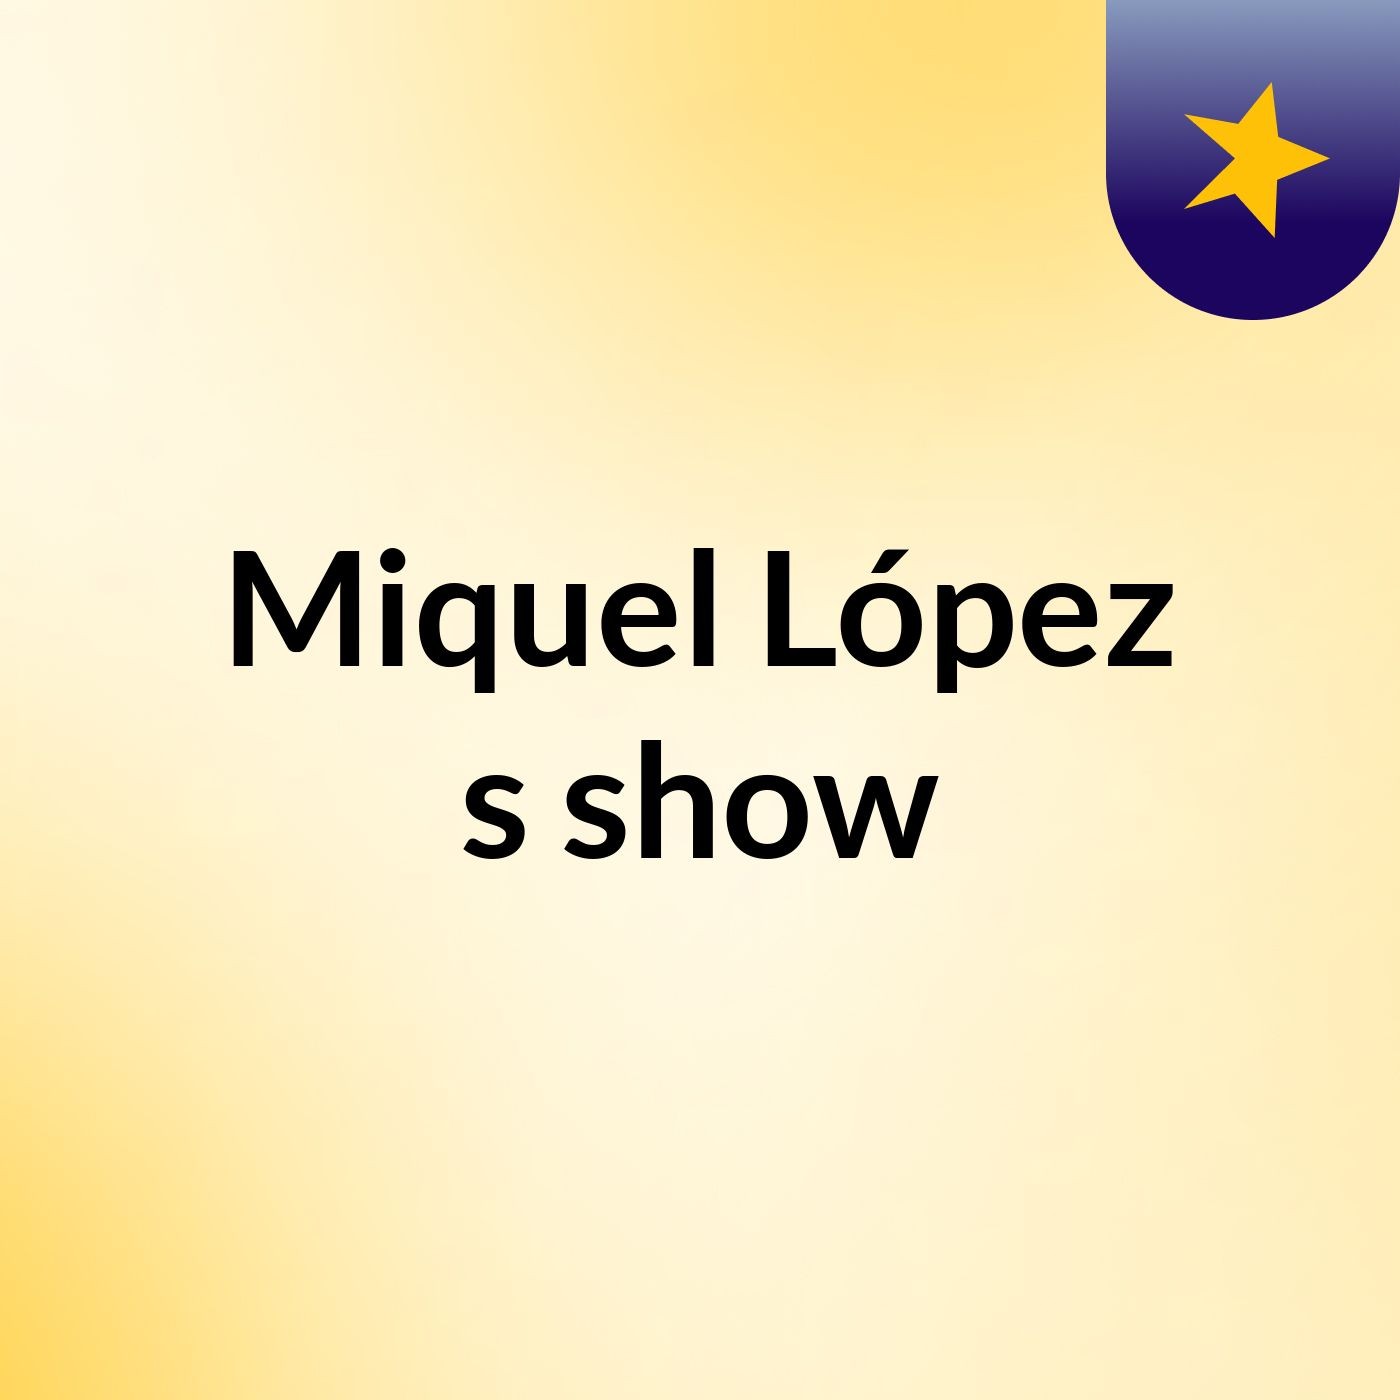 Miquel López's show